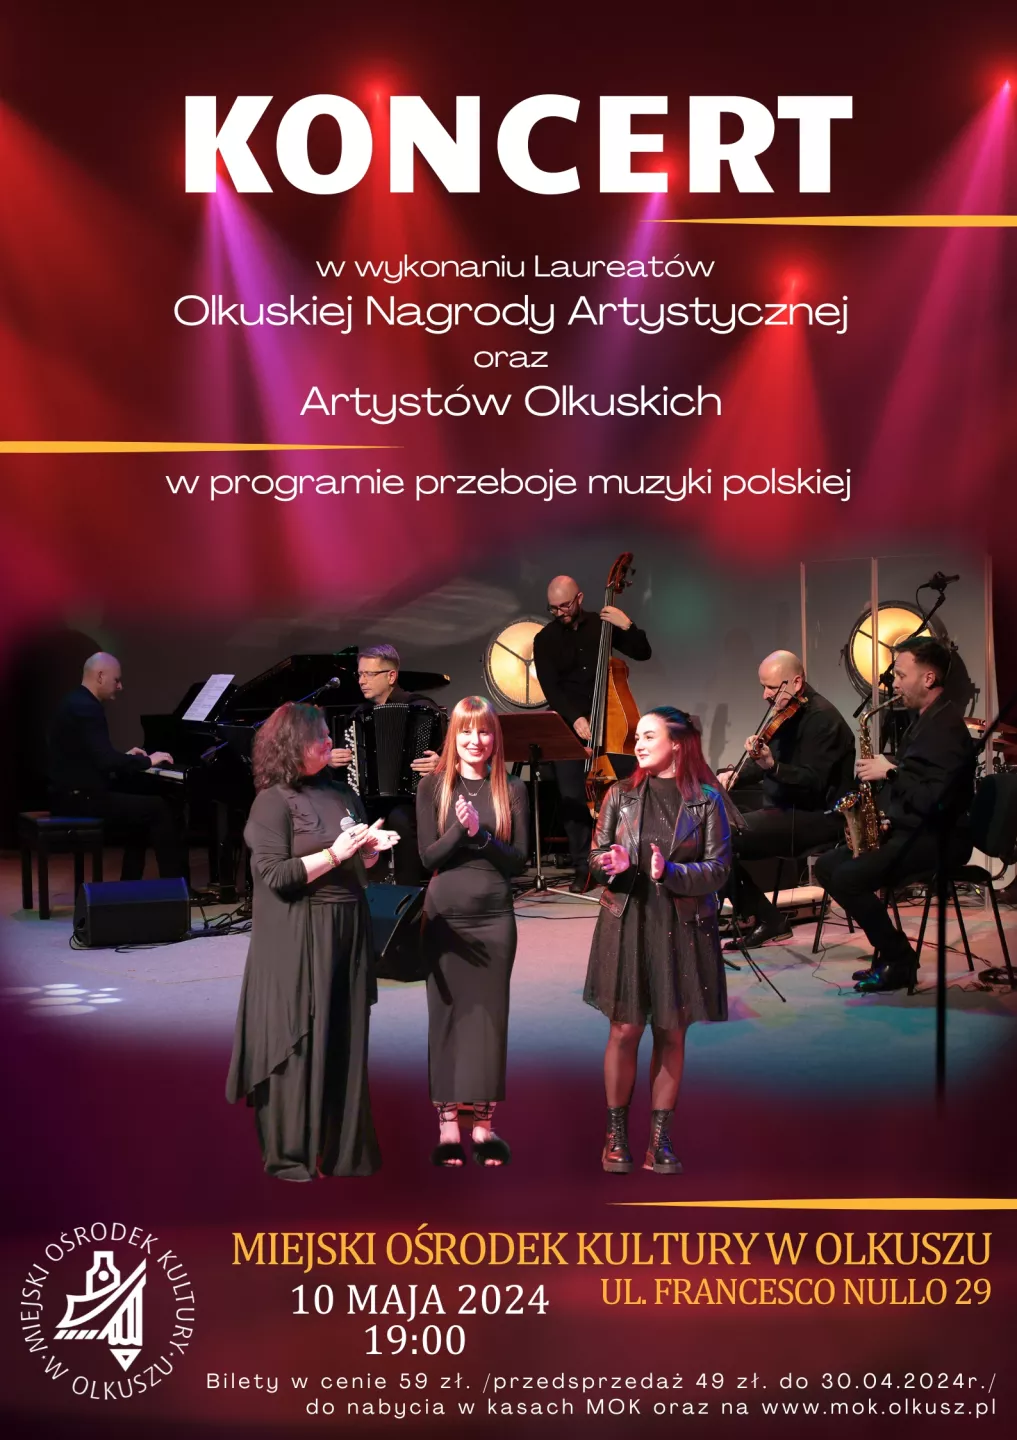 Koncert w wykonaniu Laureatów Olkuskiej Nagrody Artystycznej oraz Artystów Olkuskich